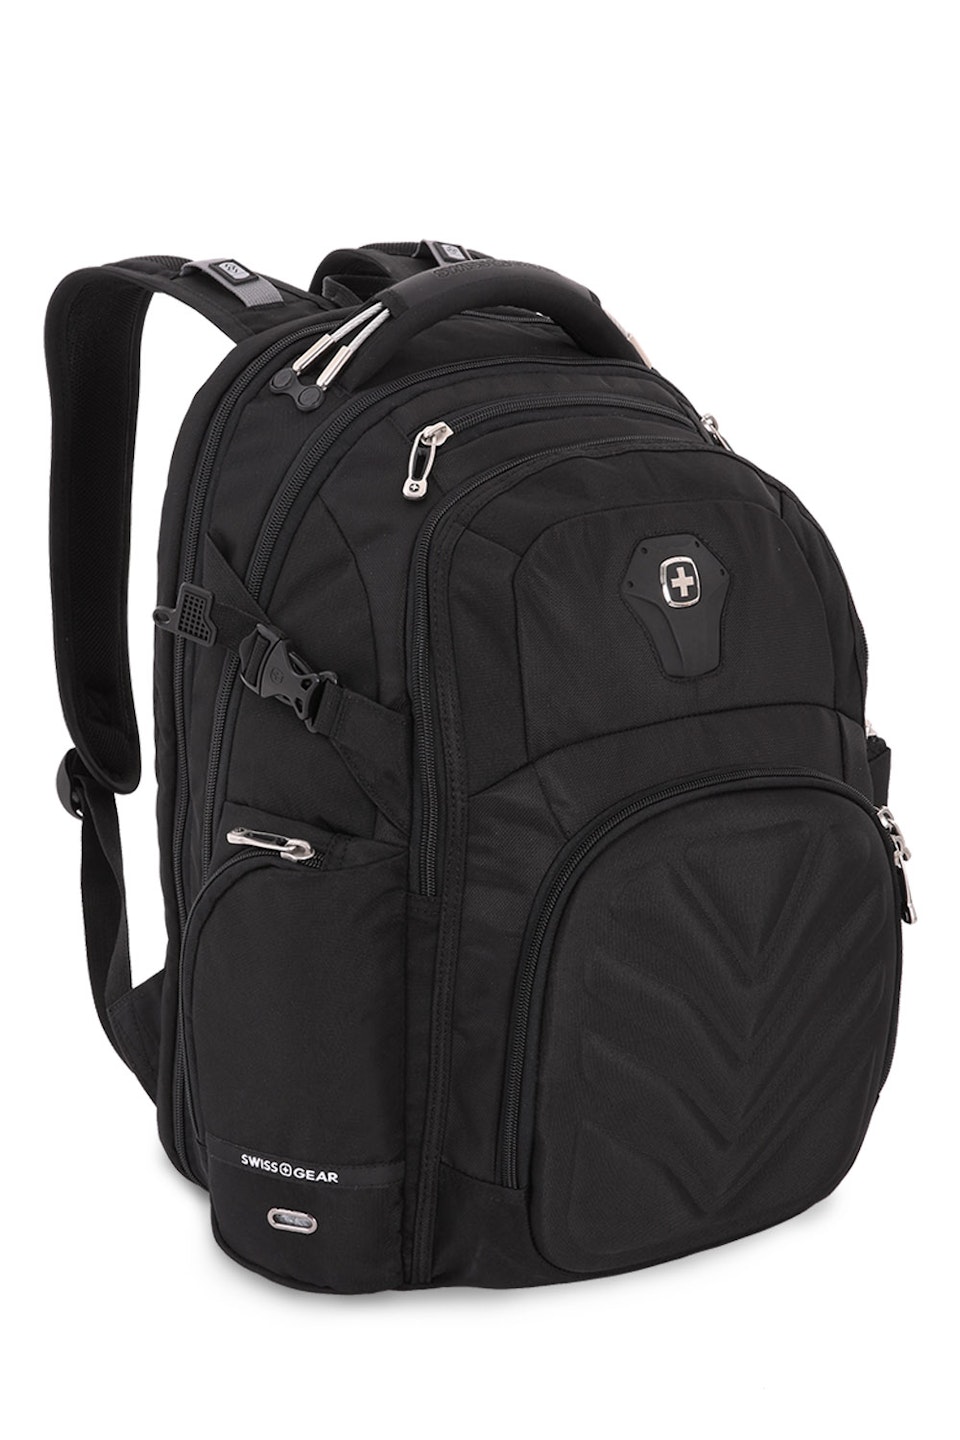  5709 ScanSmart Laptop Backpack - Black